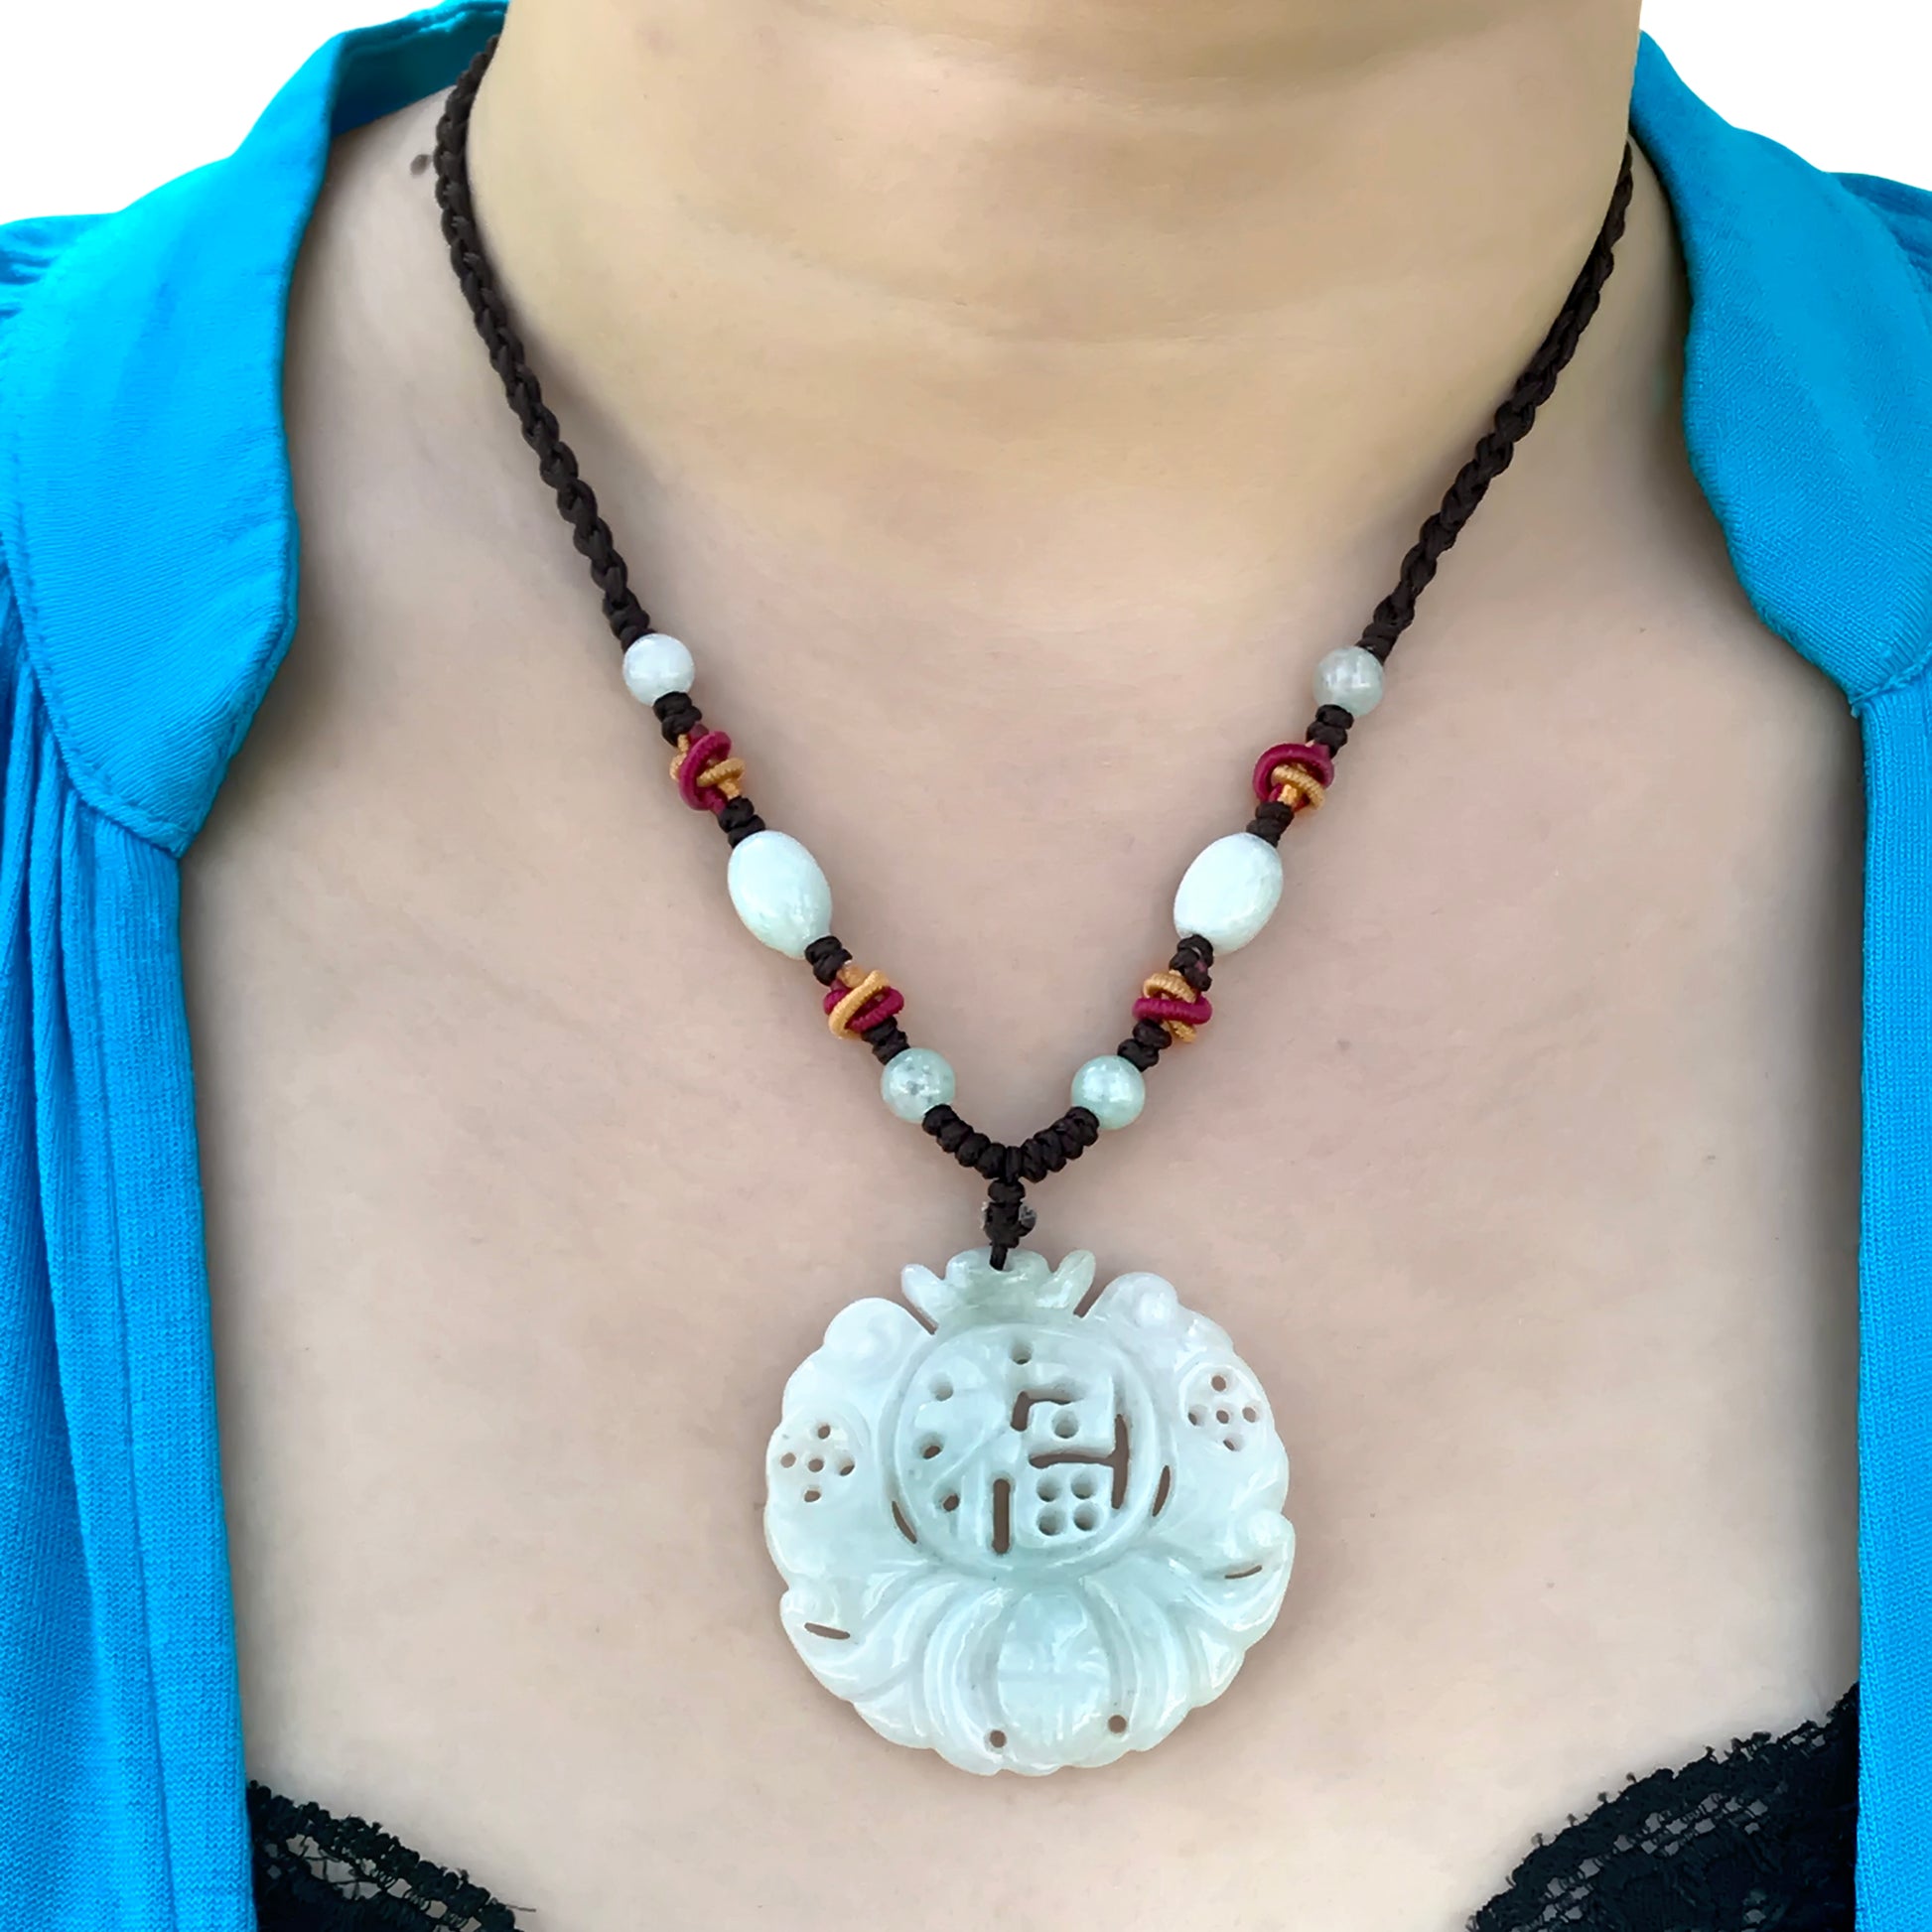 Mystical Bat Luck Handmade Jade Necklace Pendant